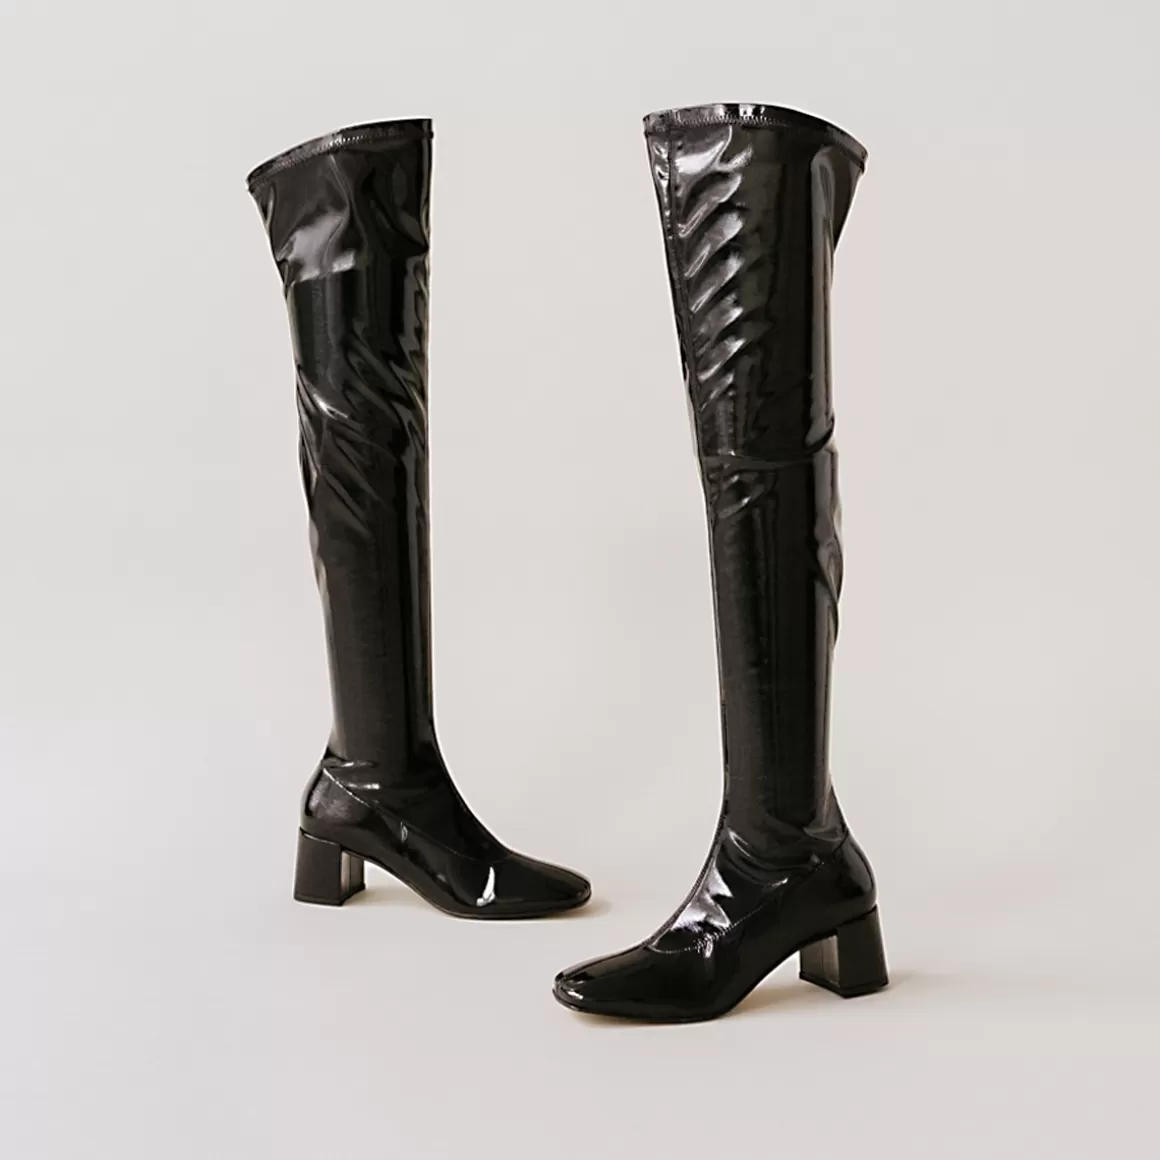 High boots with heels<Jonak Best